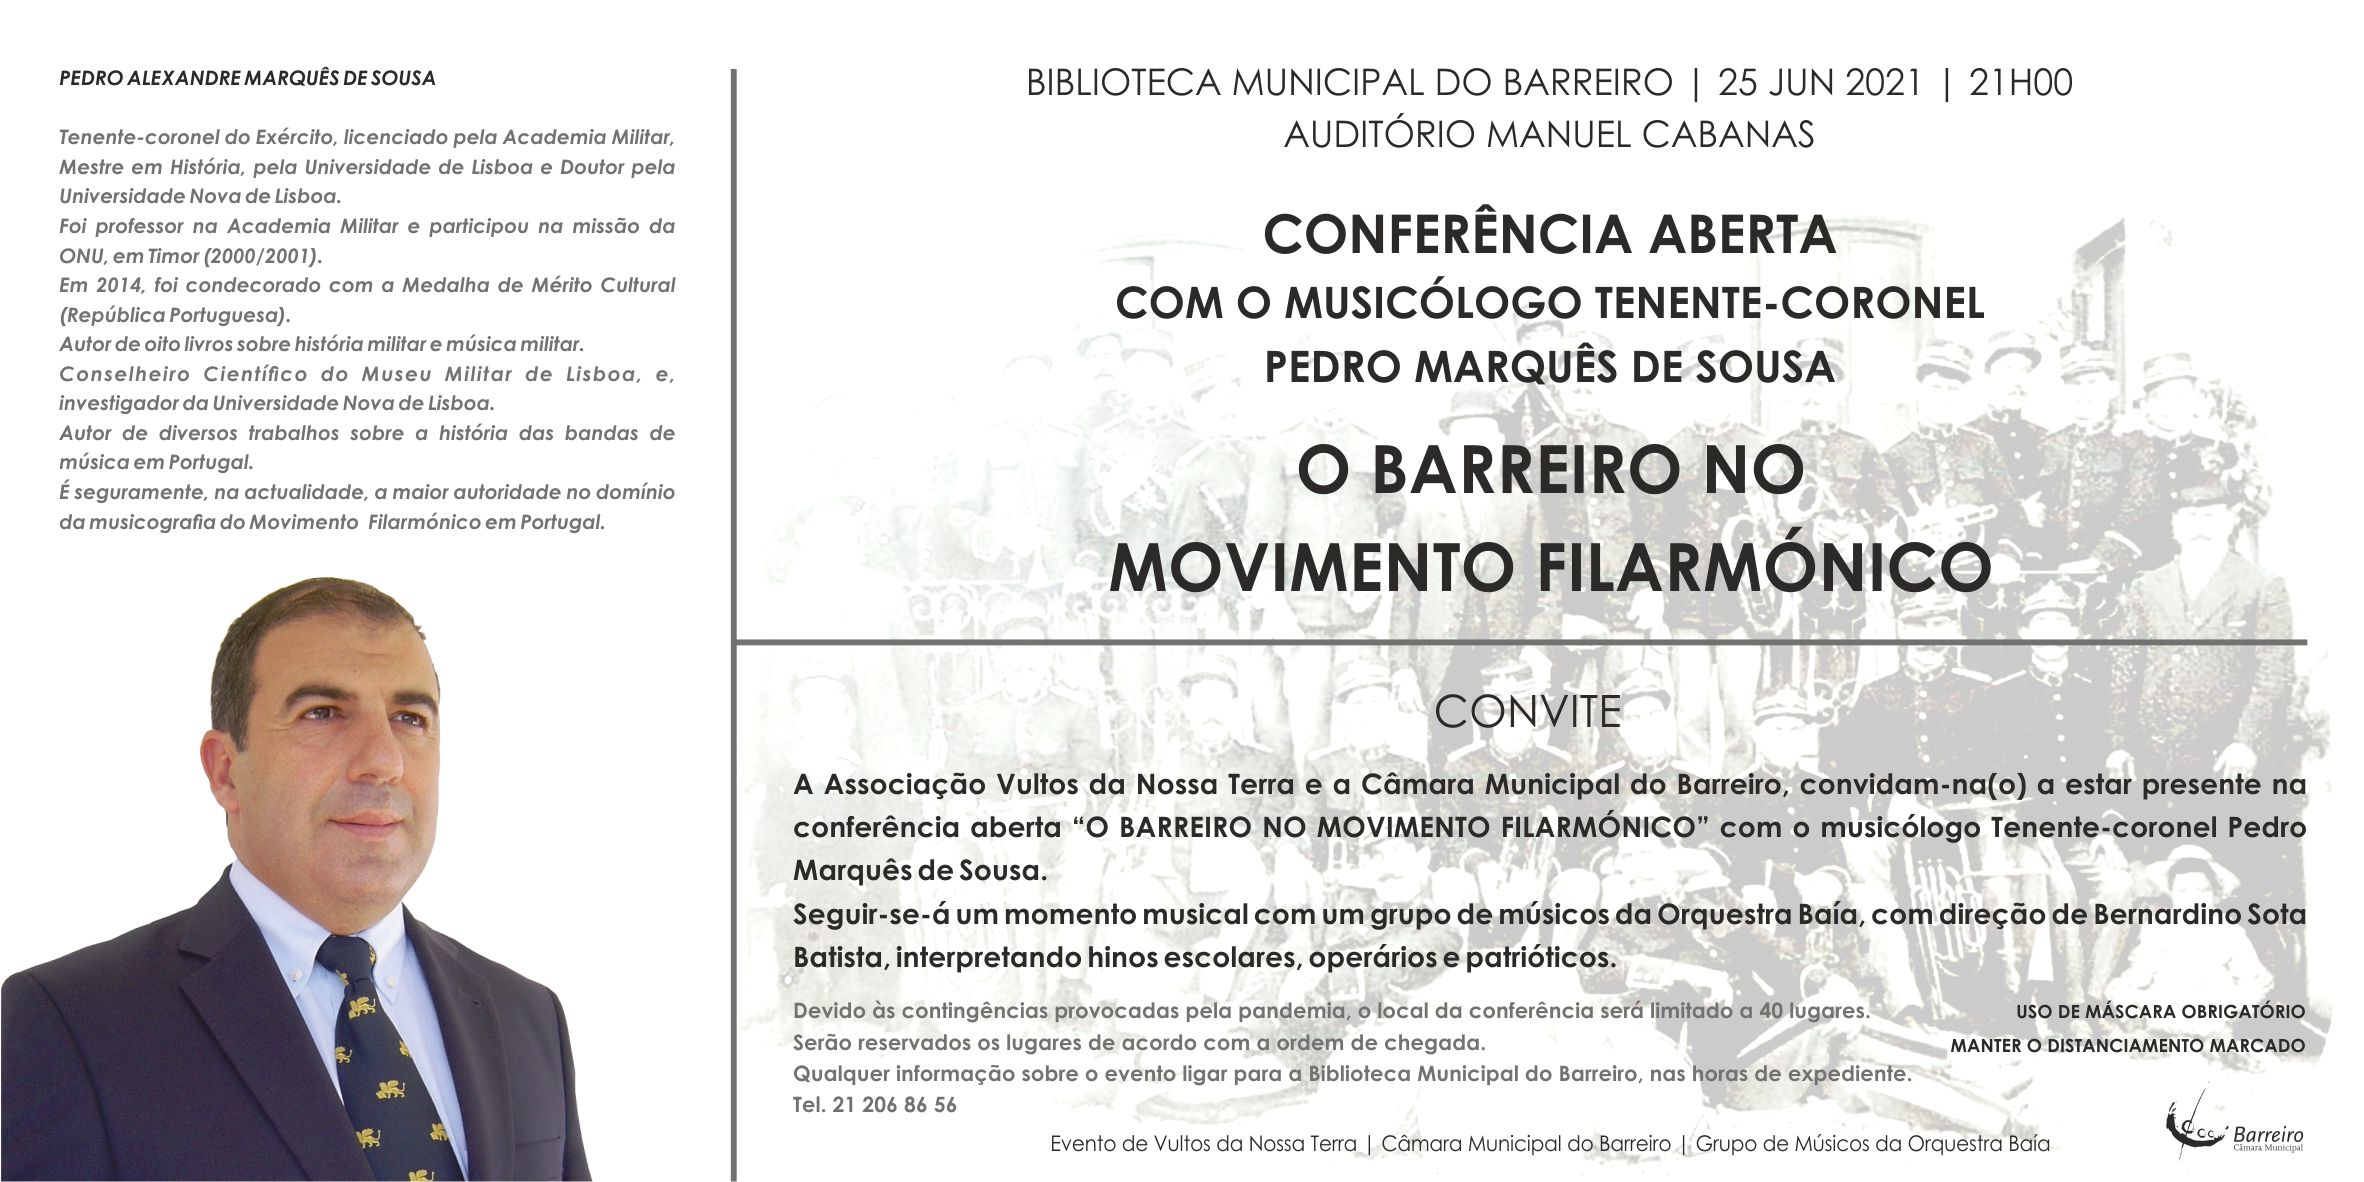 O Barreiro no Movimento Filarmónico | Conferência Aberta | Com o musicólogo Pedro Marquês de Sousa